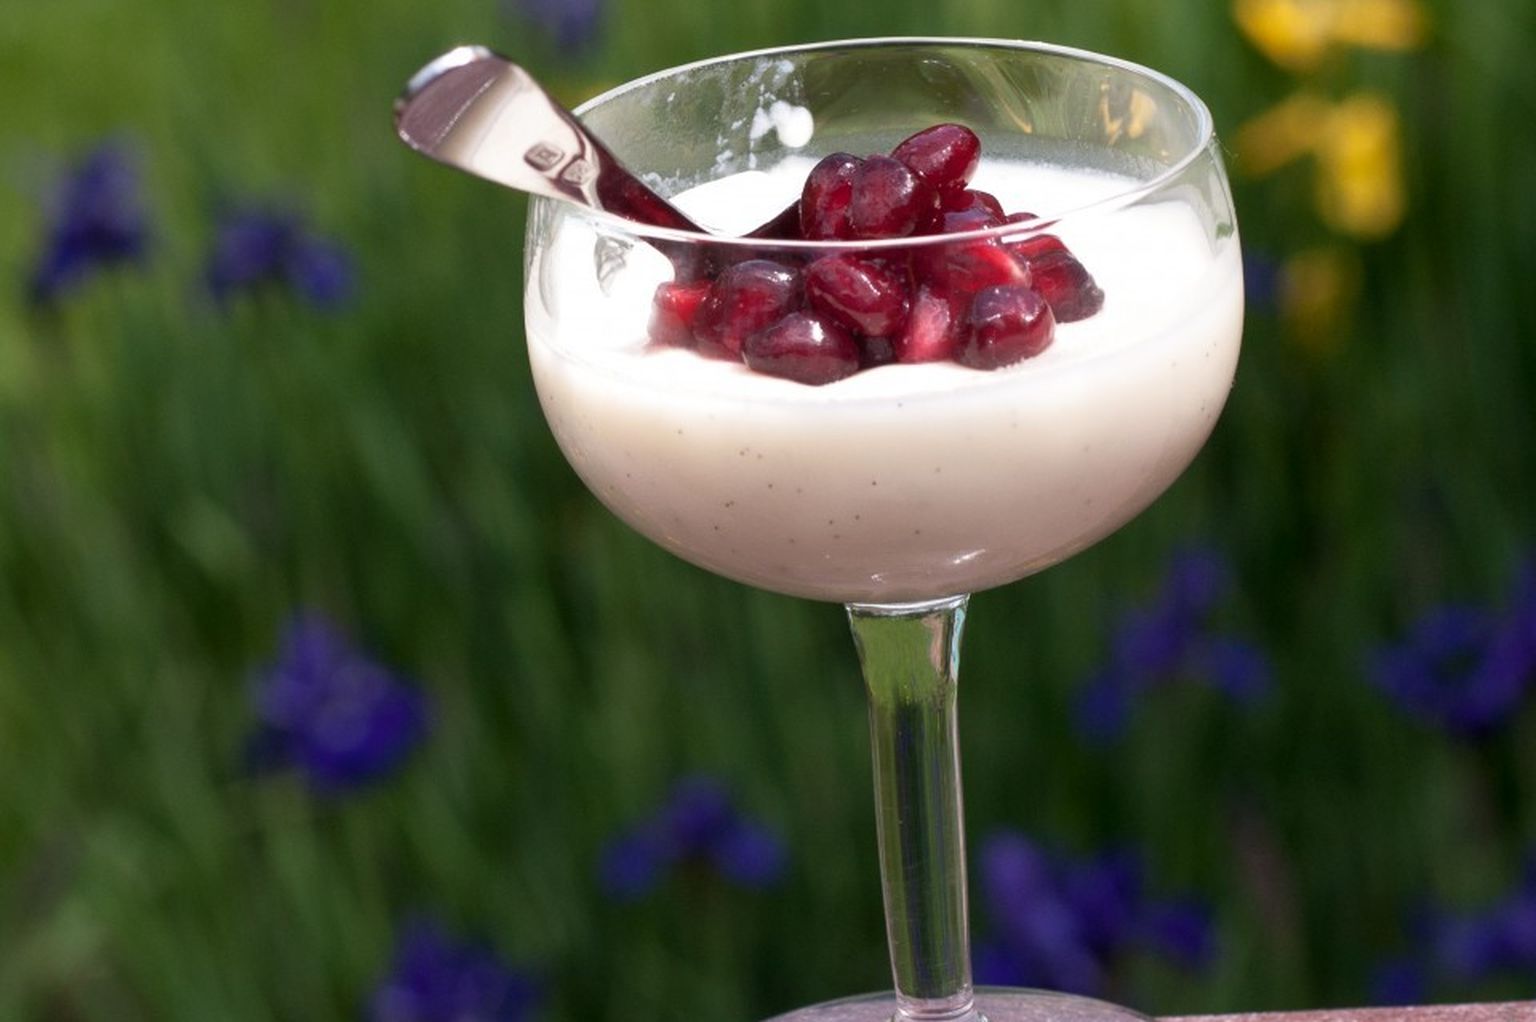 Vanilla Buttermilk Panna Cotta With Roasted Cherries Recipe On Food52